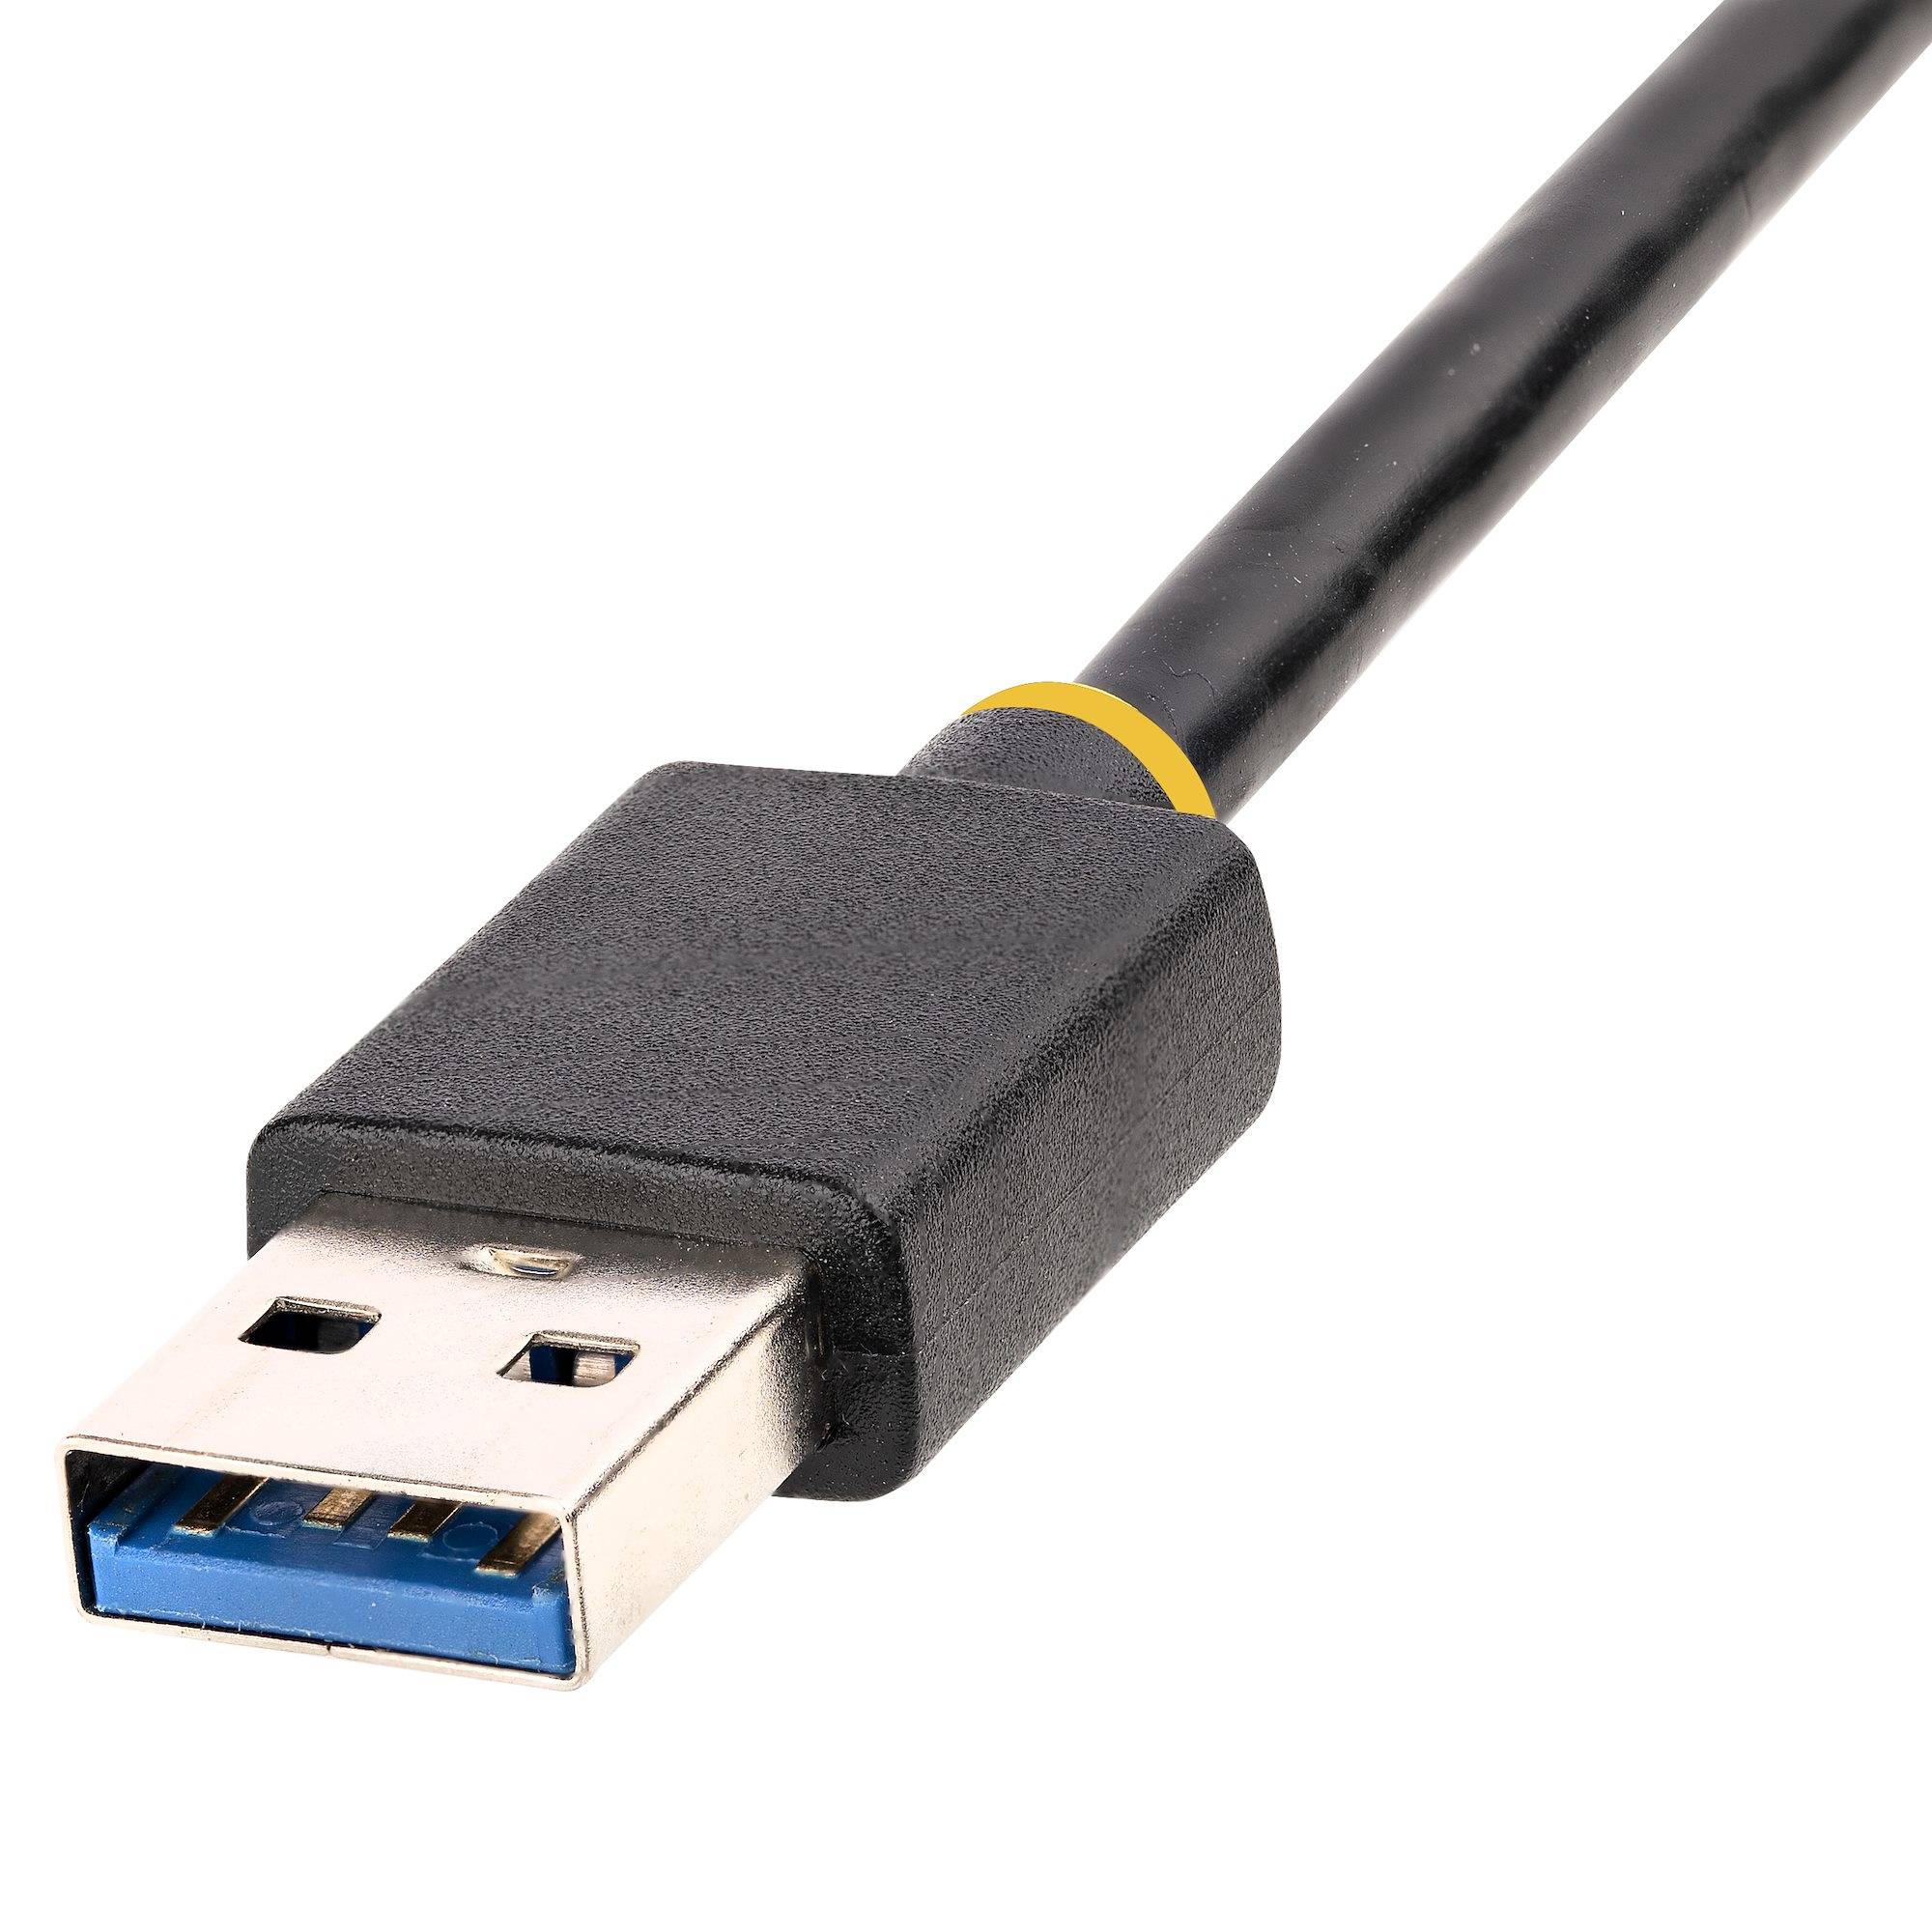 Rca Informatique - image du produit : ADAPTATEUR ETHERNET USB 3.0 10/100/1000 GIGABIT ETHERNET